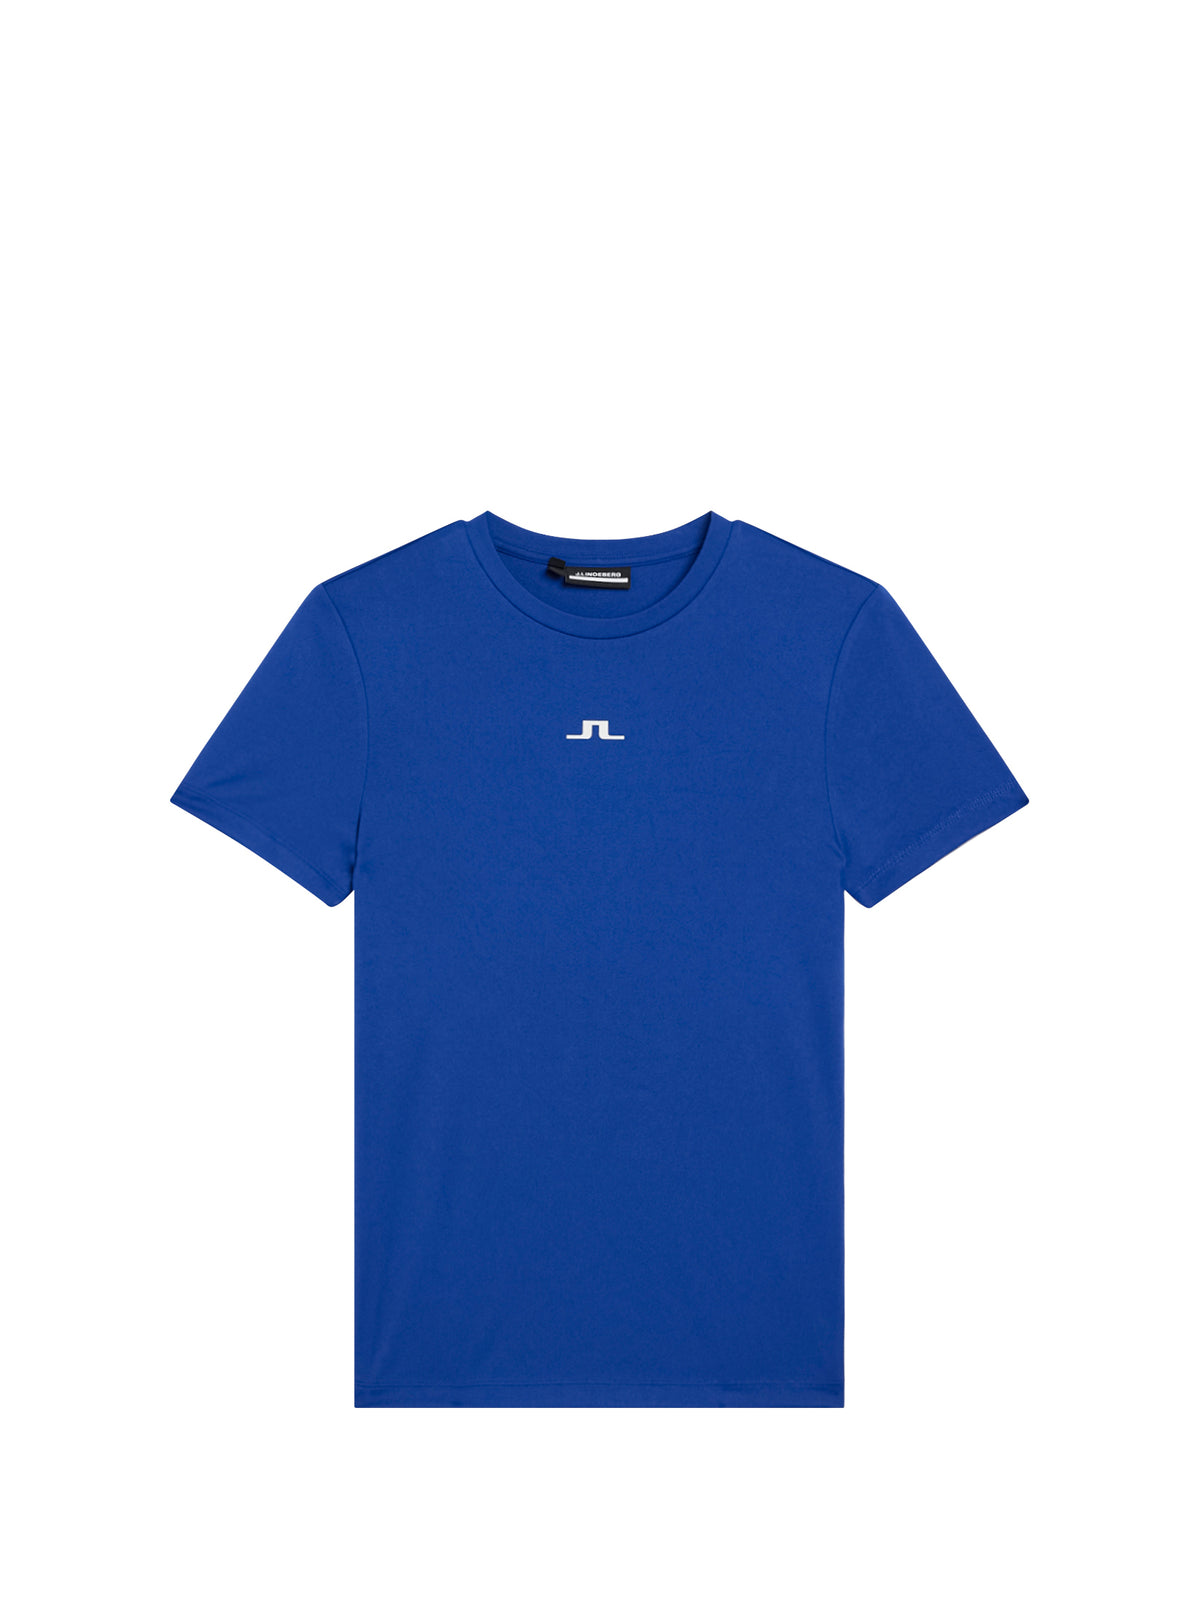 Ada T-shirt / Sodalite Blue